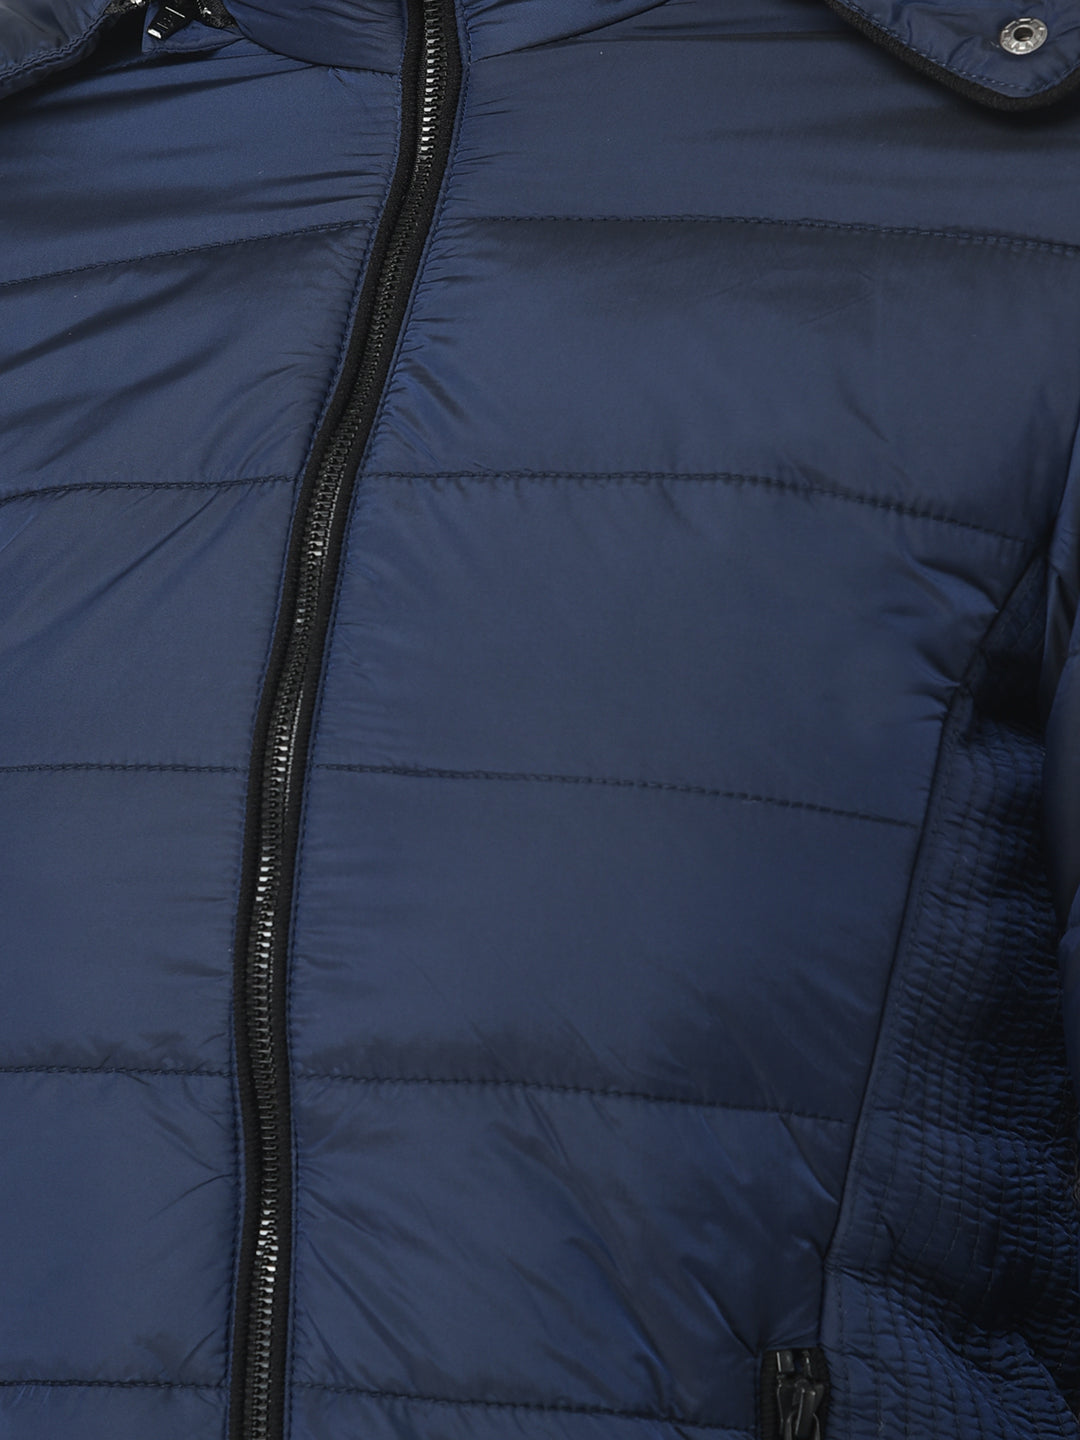  Royal Blue Padded Jacket